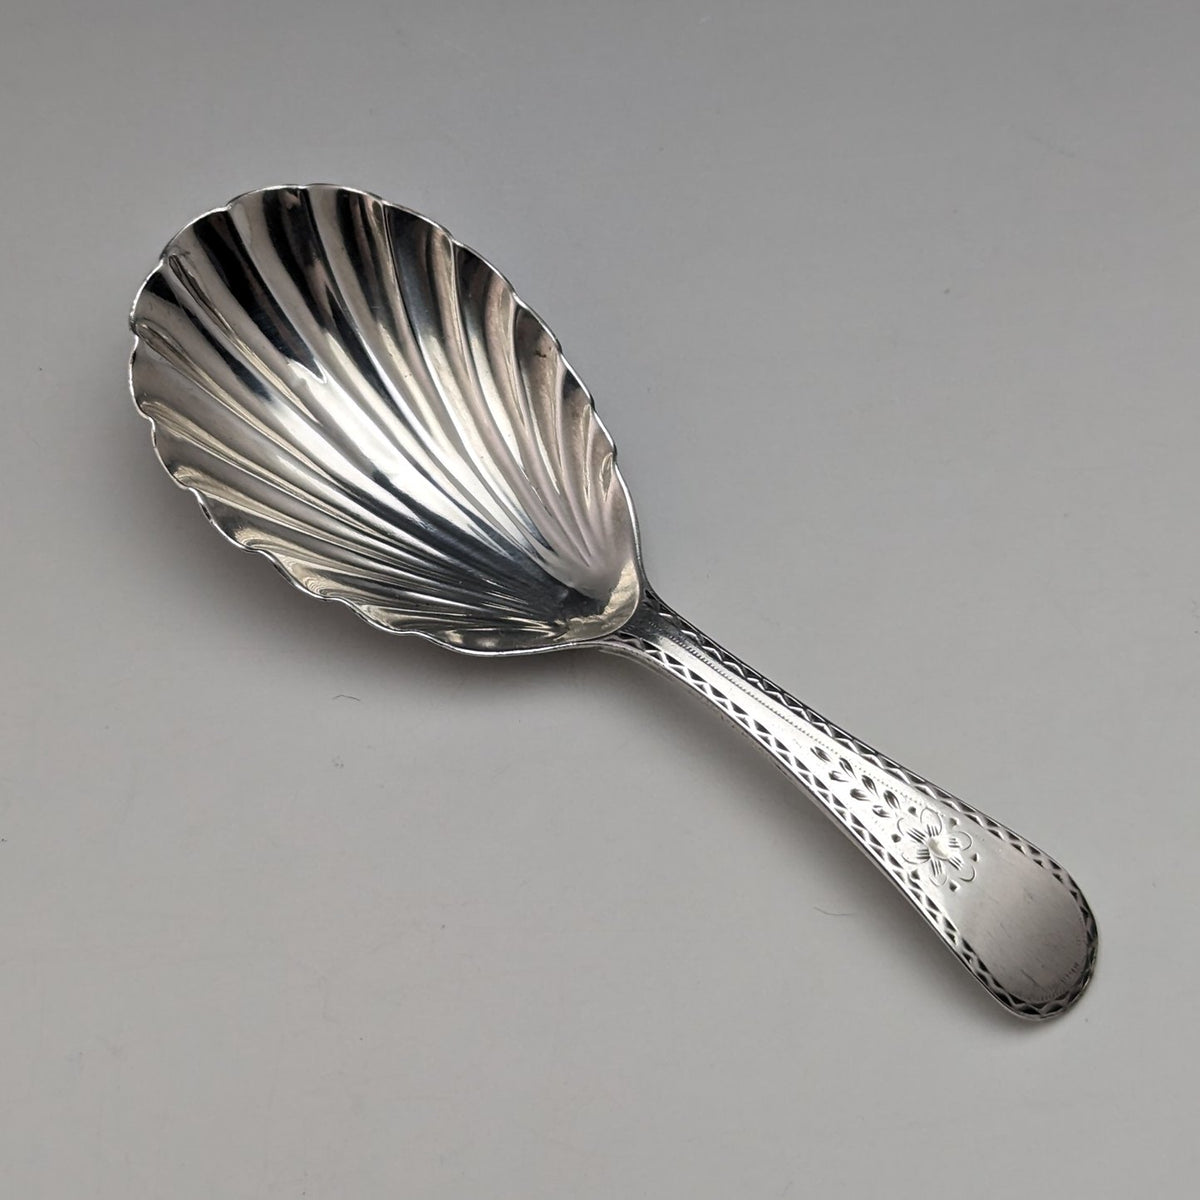 1822年 英国アンティーク 純銀製ティーキャディースプーン メーカー不明目立った傷や汚れのない美品機能